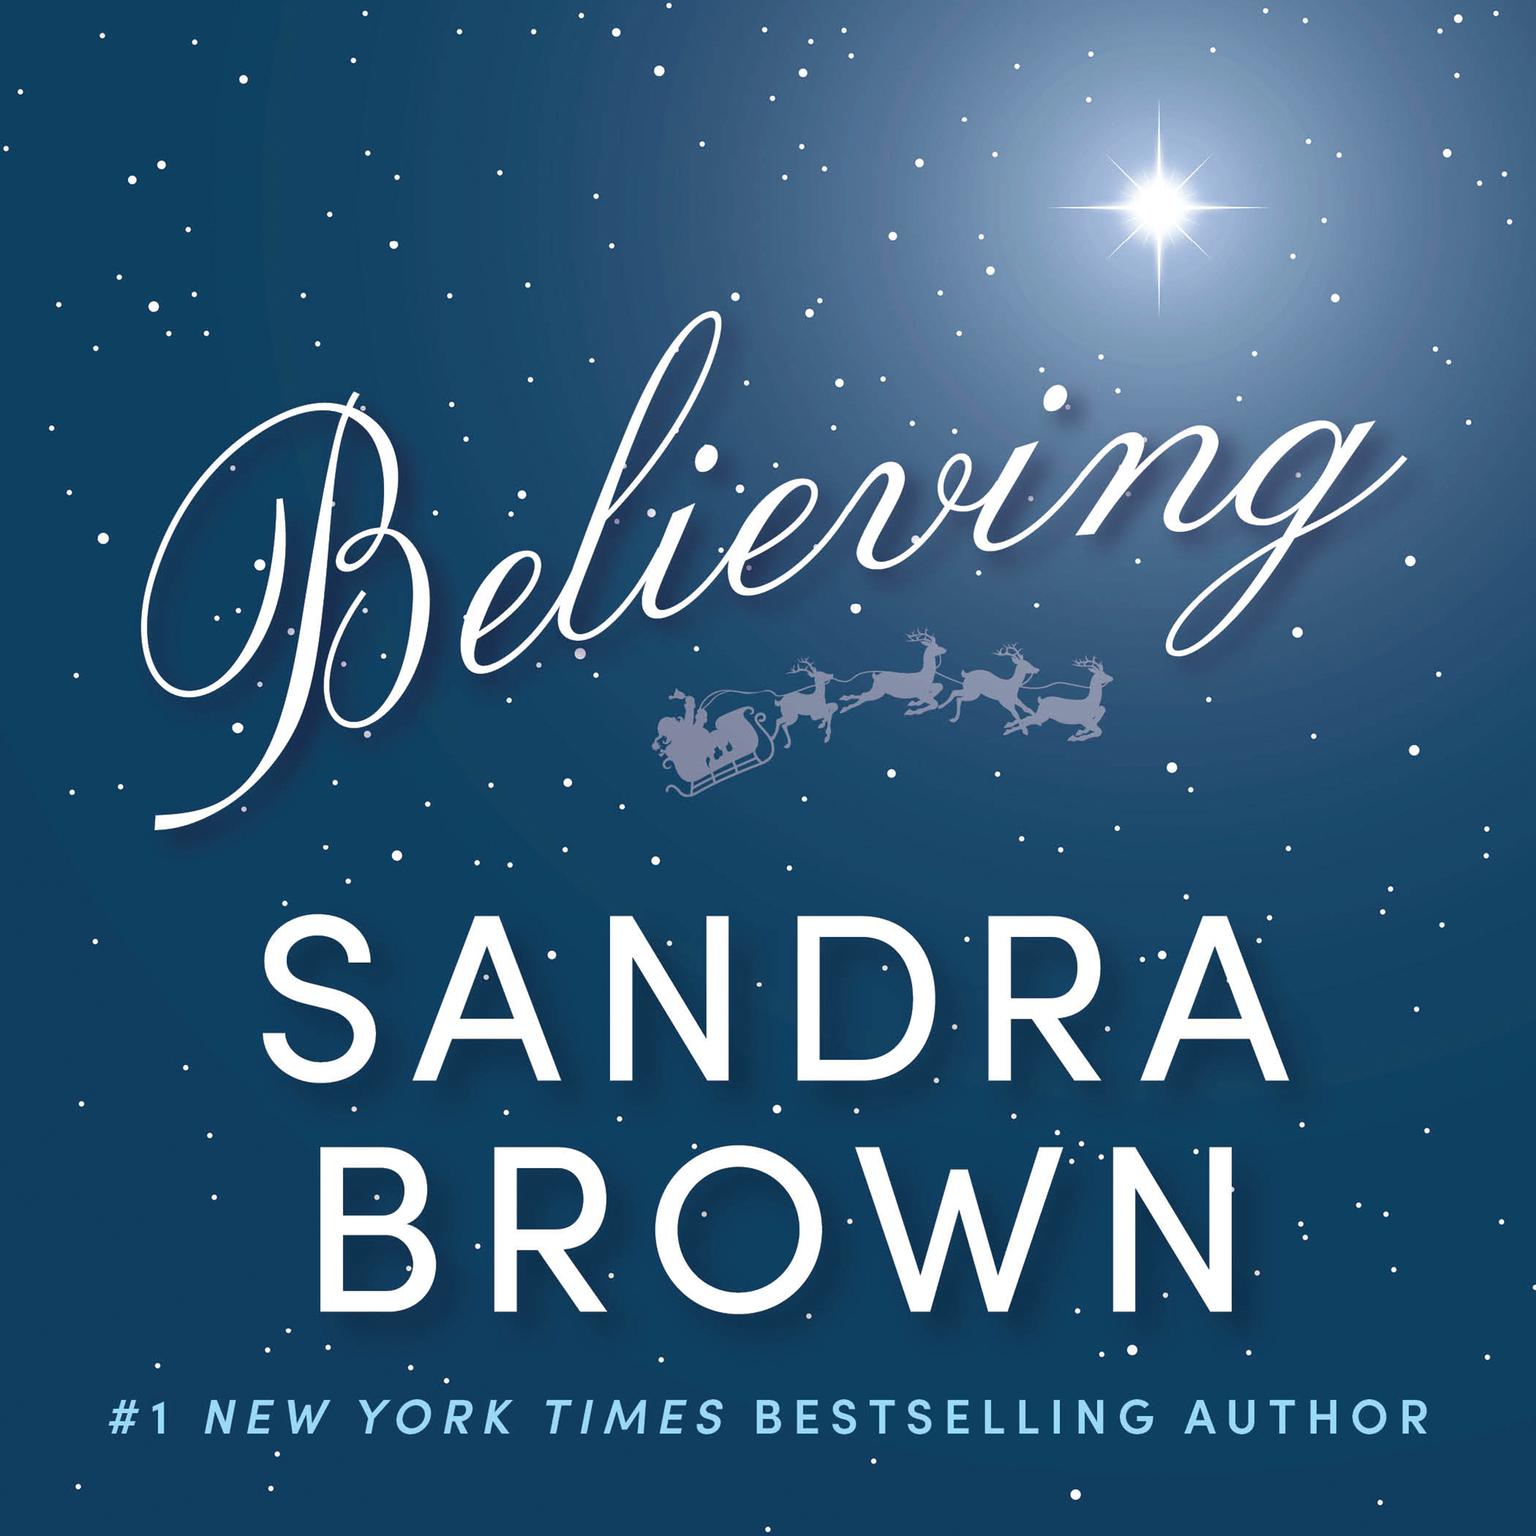 Believing Audiobook, by Sandra Brown